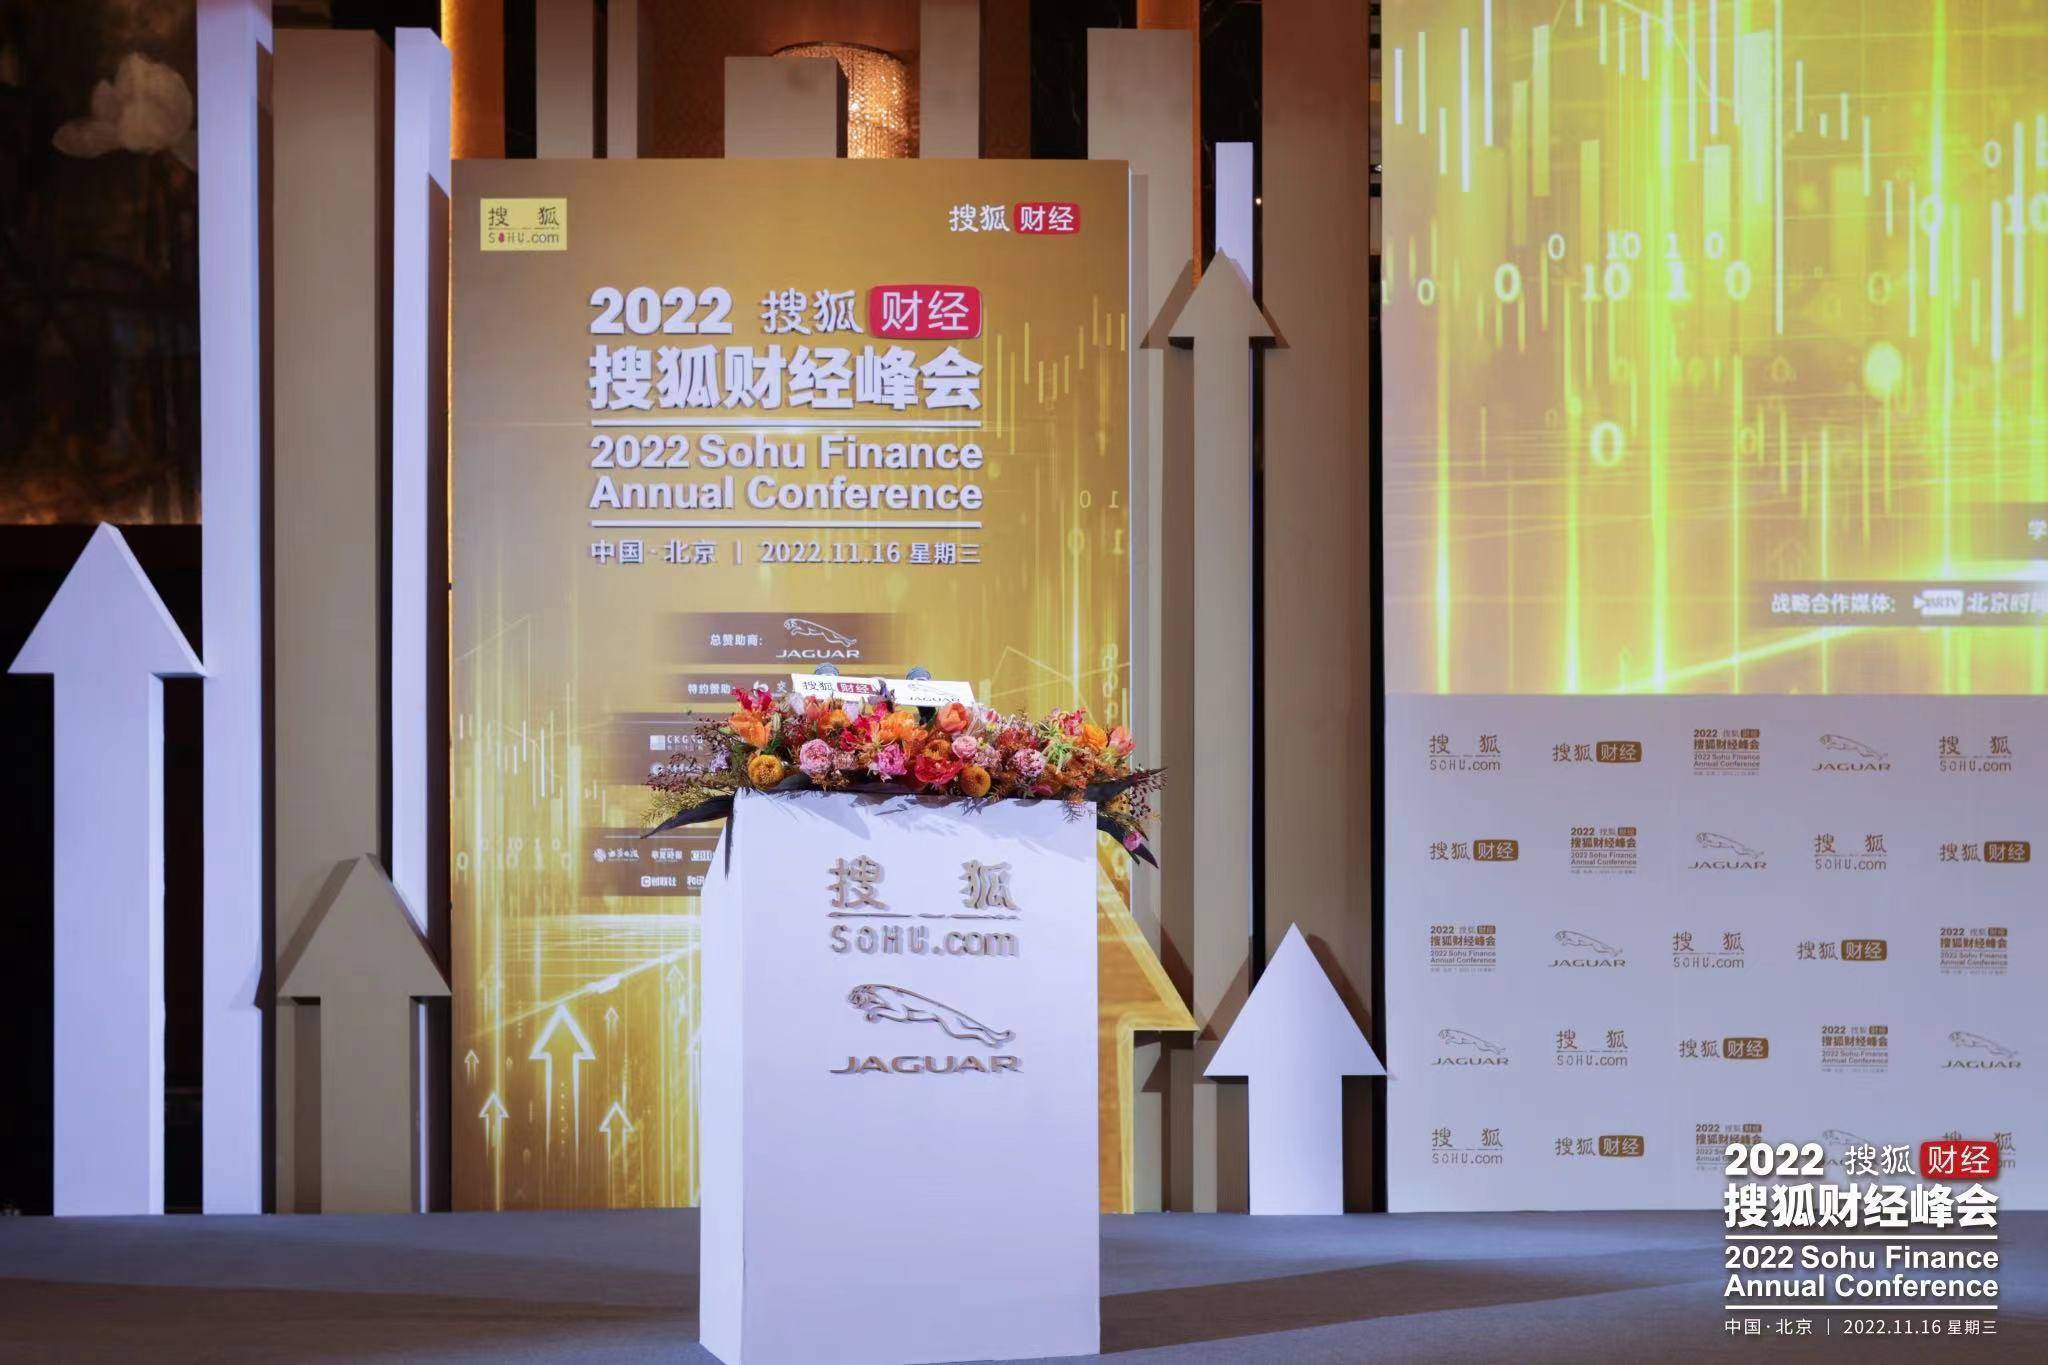 展望未来机遇、与卓越者同行，2023搜狐财经年度论坛即将举办